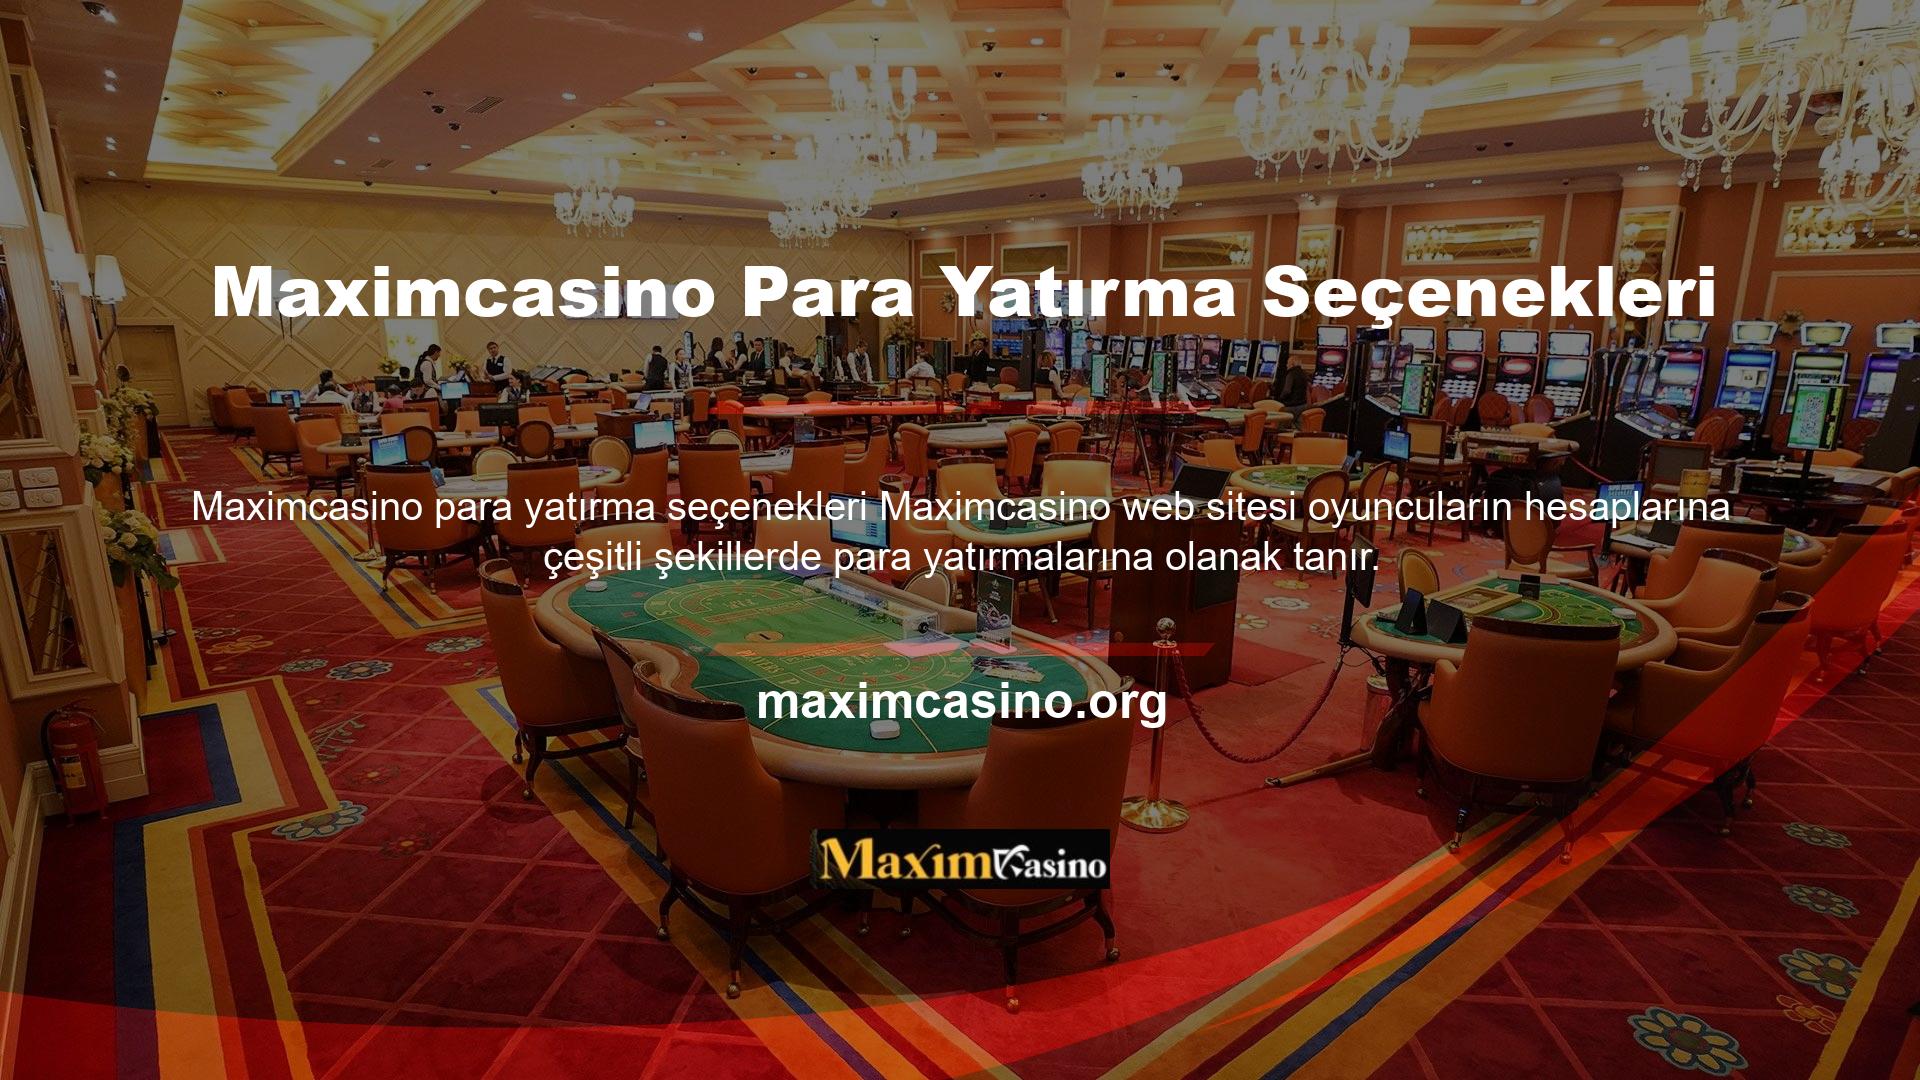 Maximcasino para yatırma seçenekleri web sitesindeki tüm teknolojiler kanıtlanmıştır